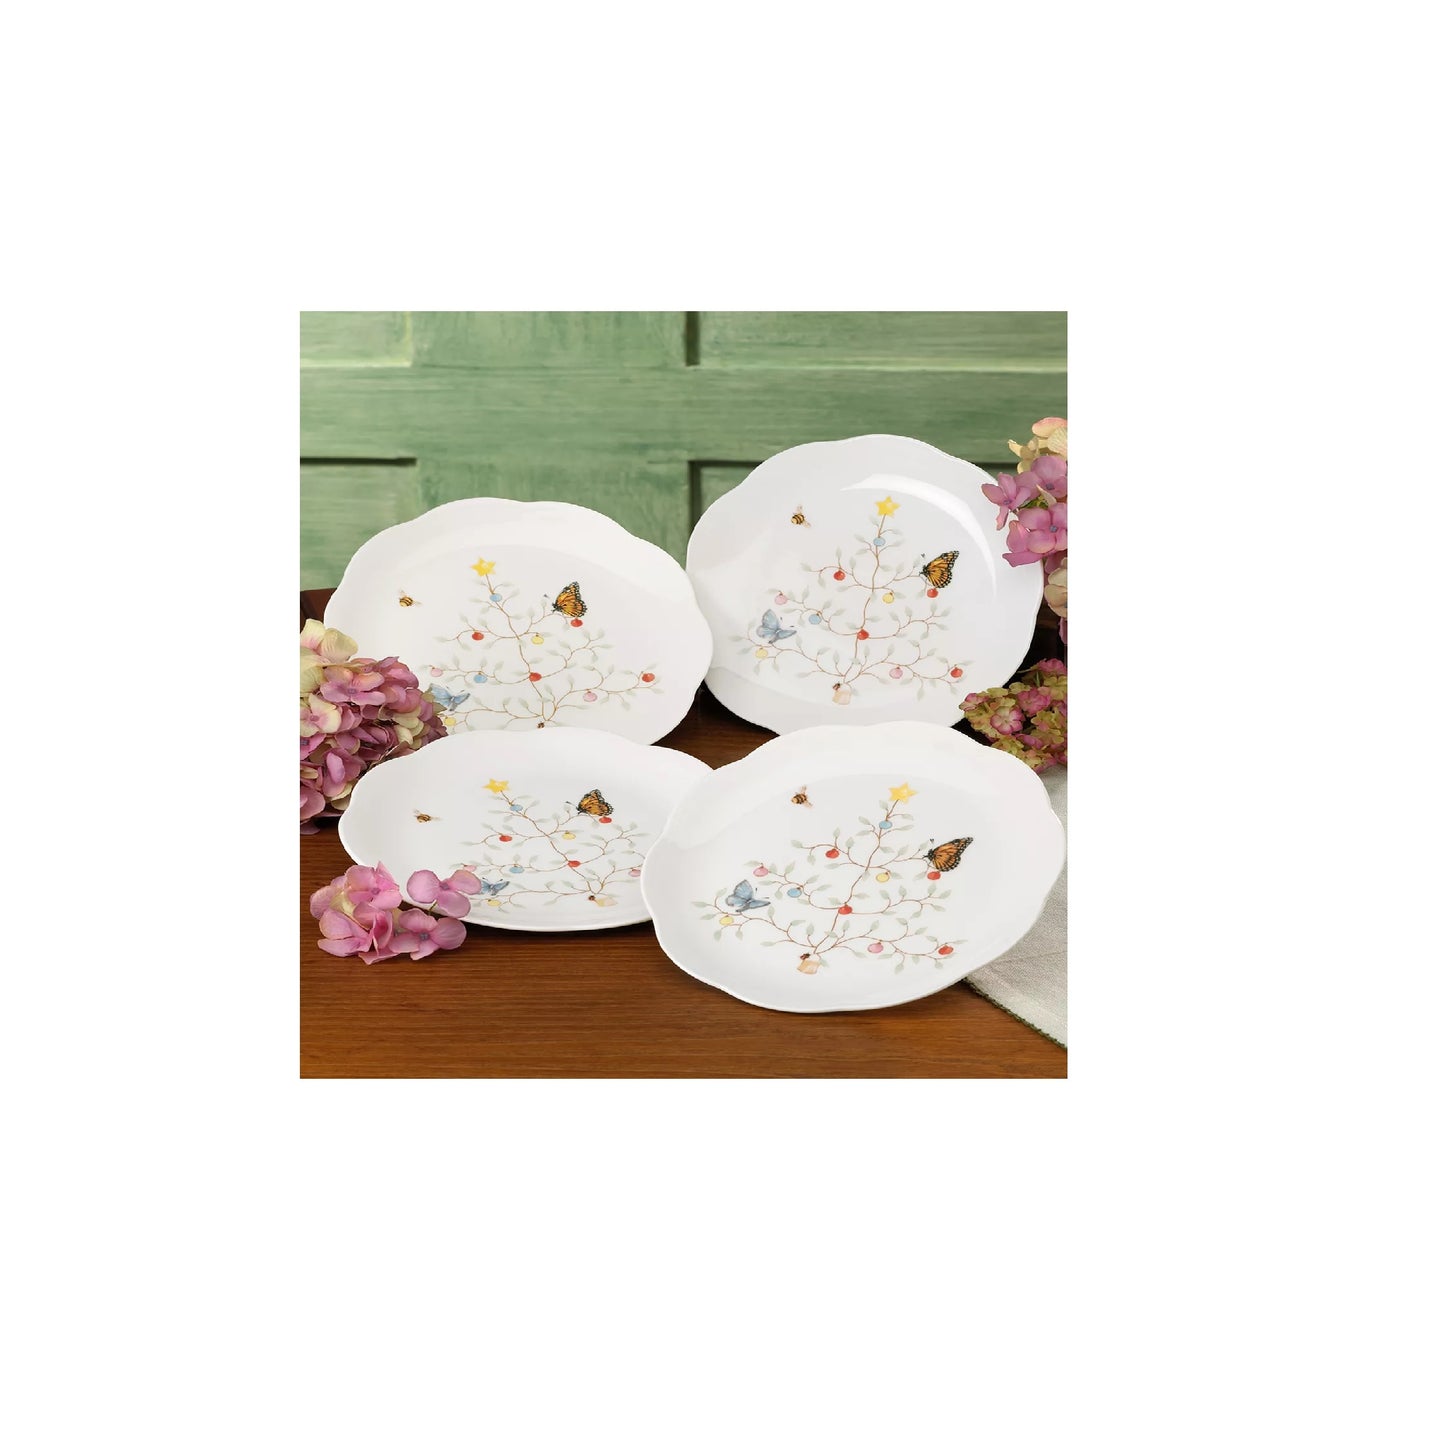 Butterfly Meadow Seasonal Dessert Plate, Set of 4 by Lenox